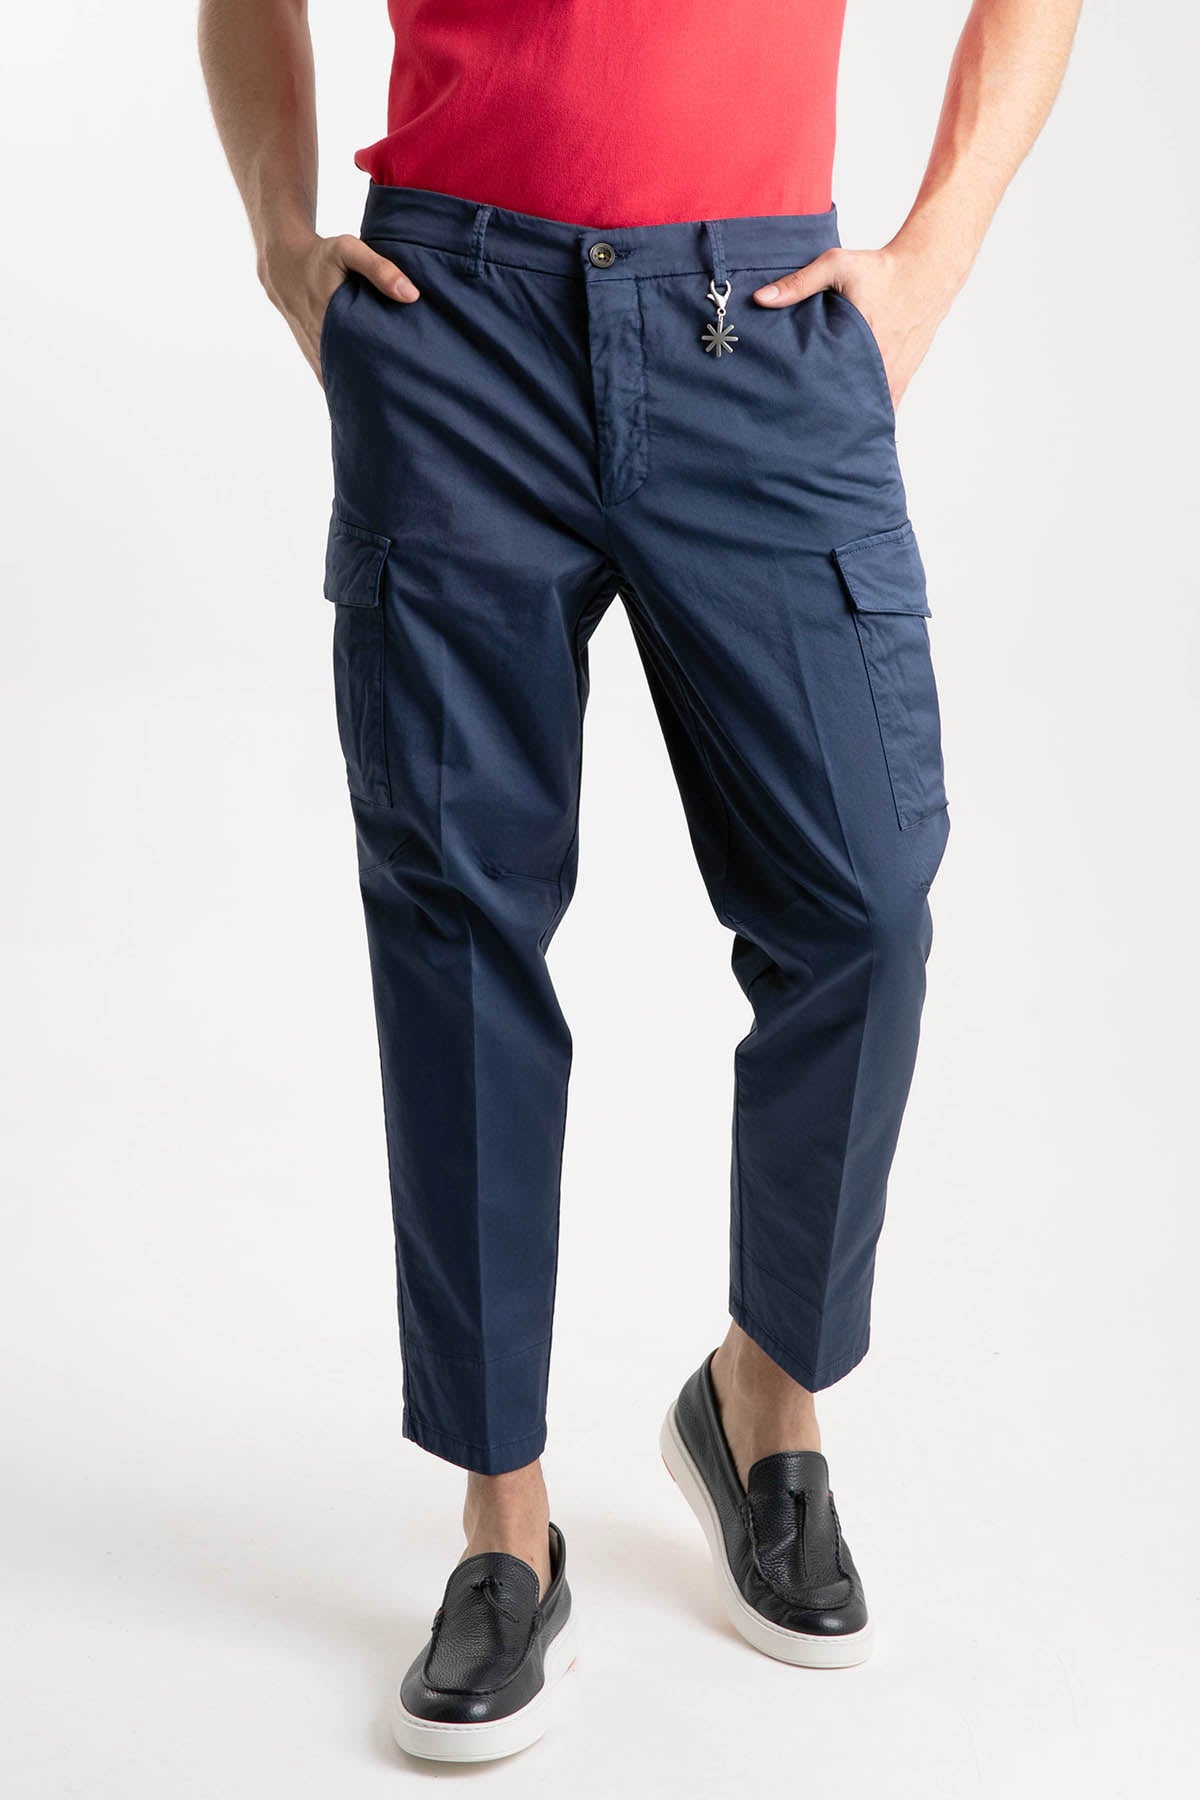 Manuel Ritz Baggy Fit Yıkamalı Kargo Pantolon-Libas Trendy Fashion Store